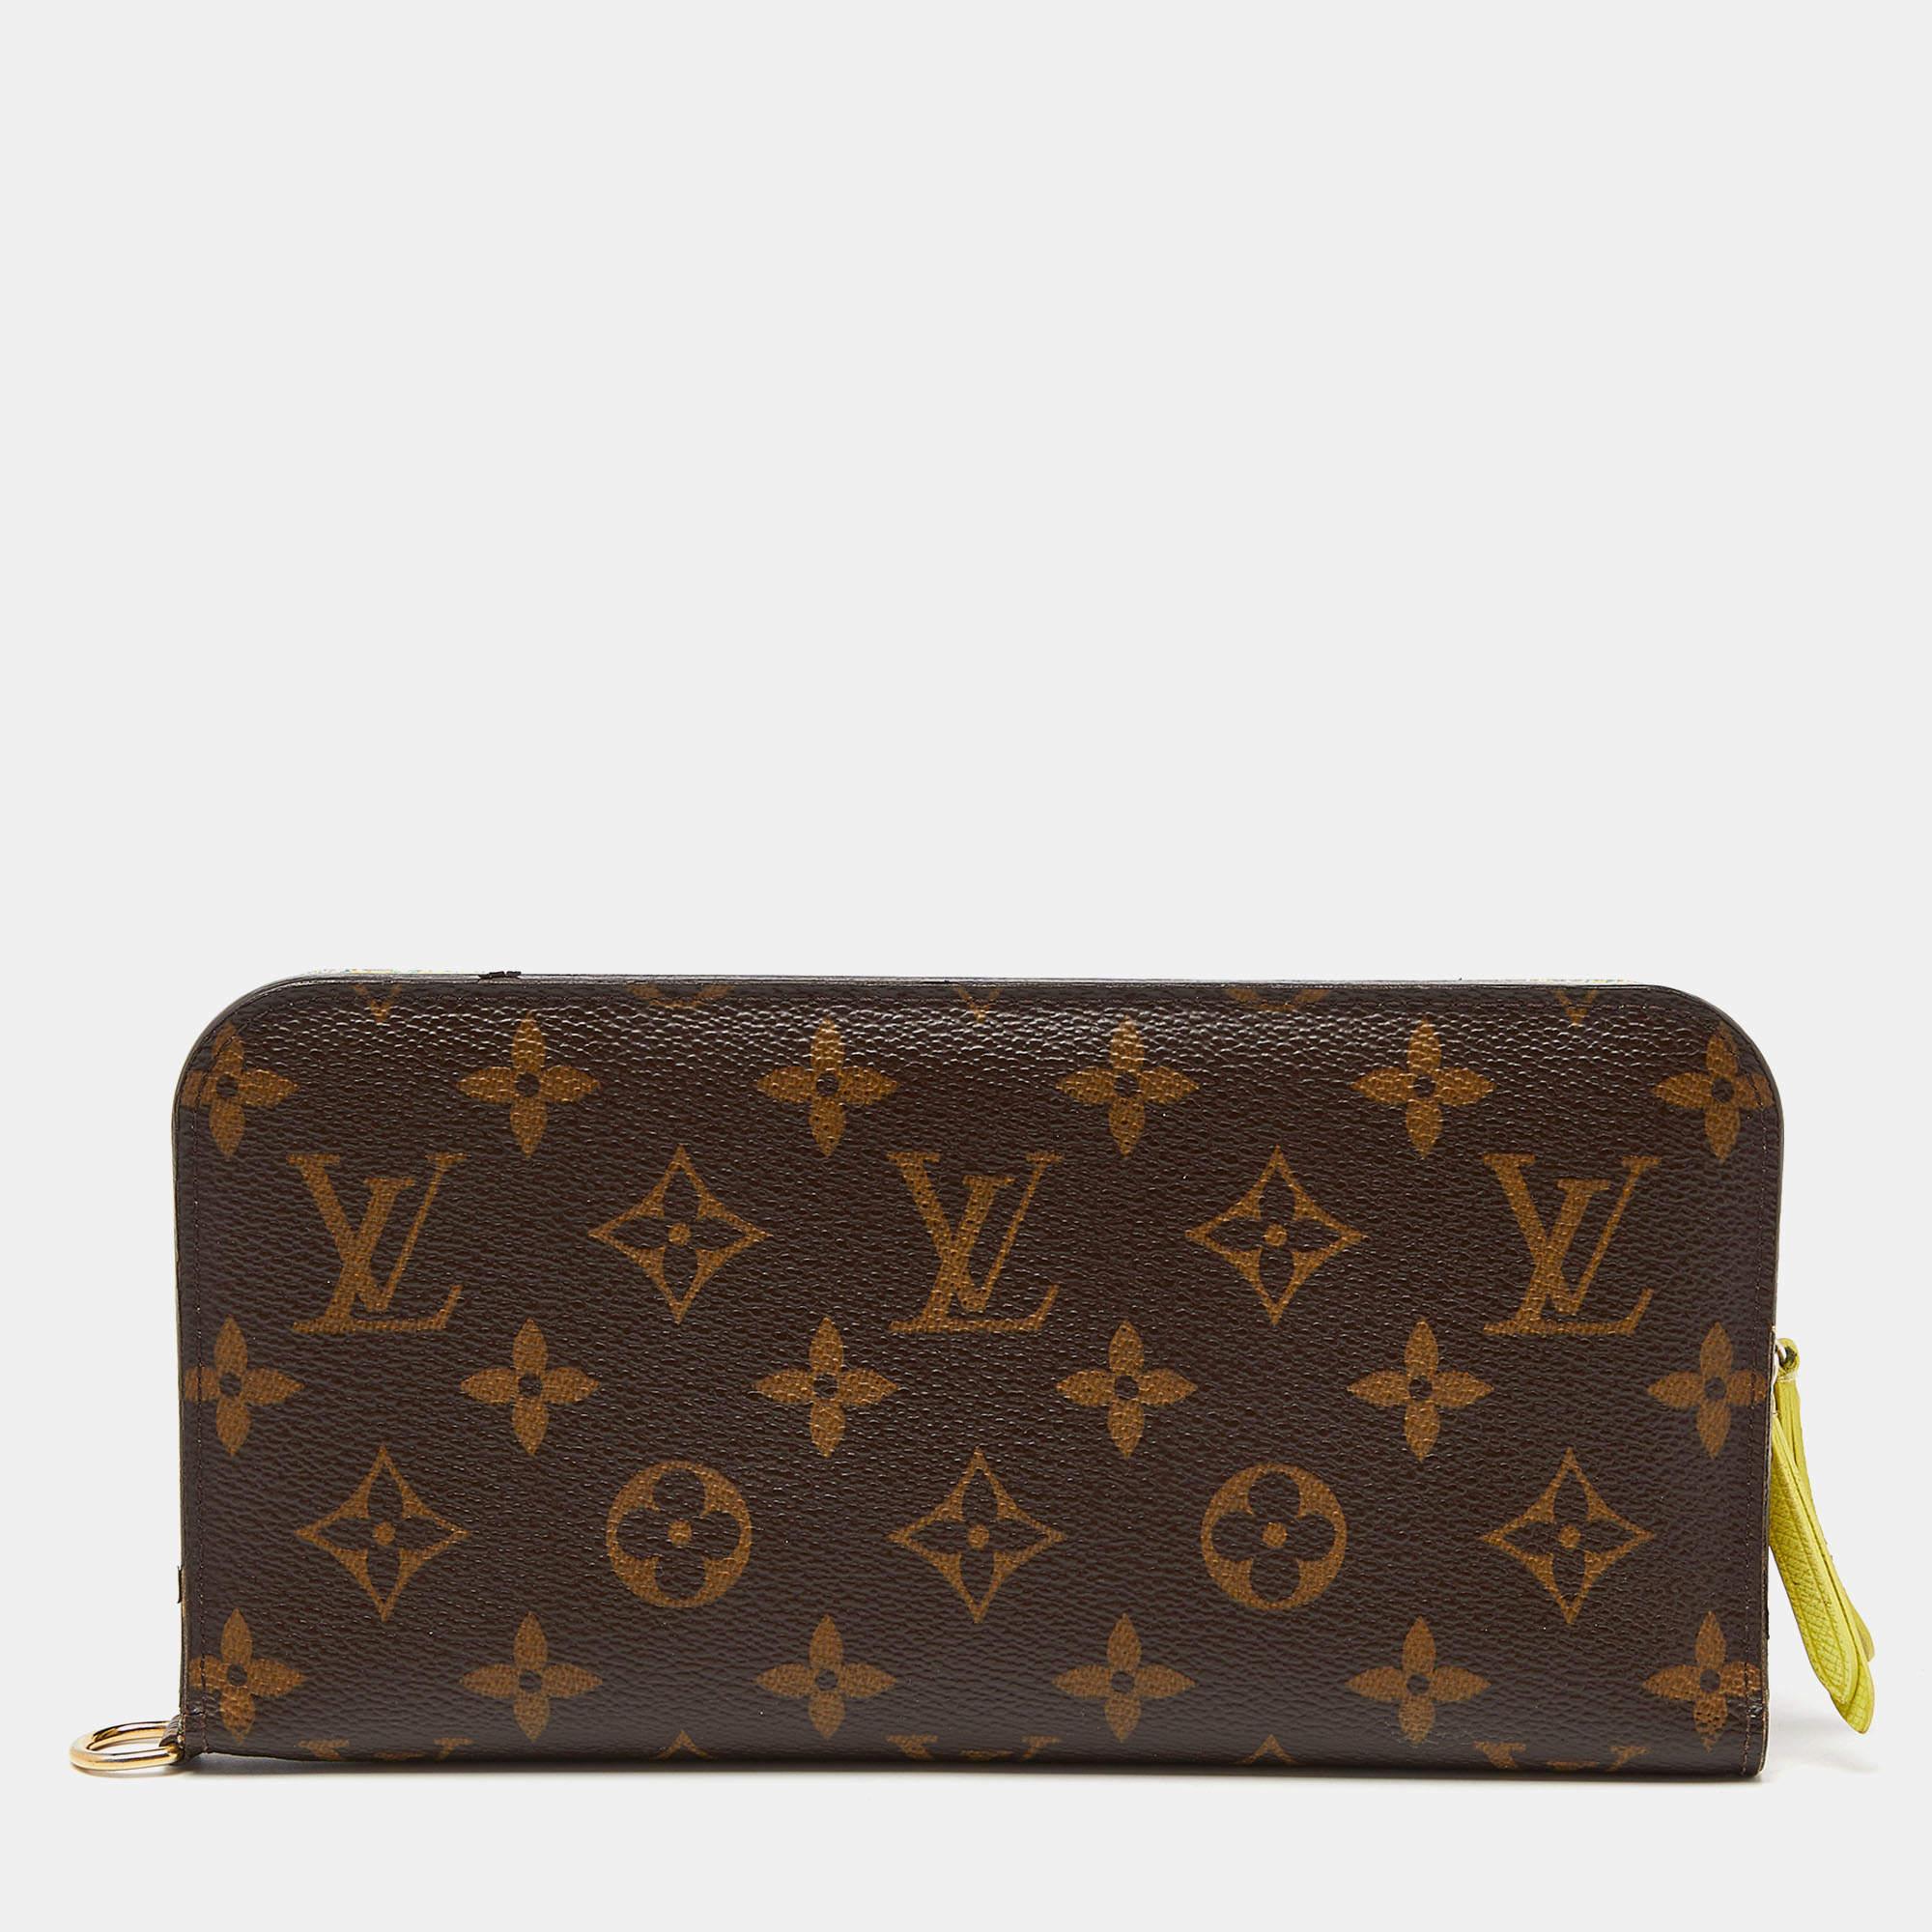 Ein Portemonnaie sollte nicht nur gut aussehen, sondern auch funktional sein, so wie diese hübsche Insolite von Louis Vuitton. Die in Spanien gefertigte Tasche mit dem charakteristischen Monogramm auf der Außenseite aus Canvas verfügt über ein